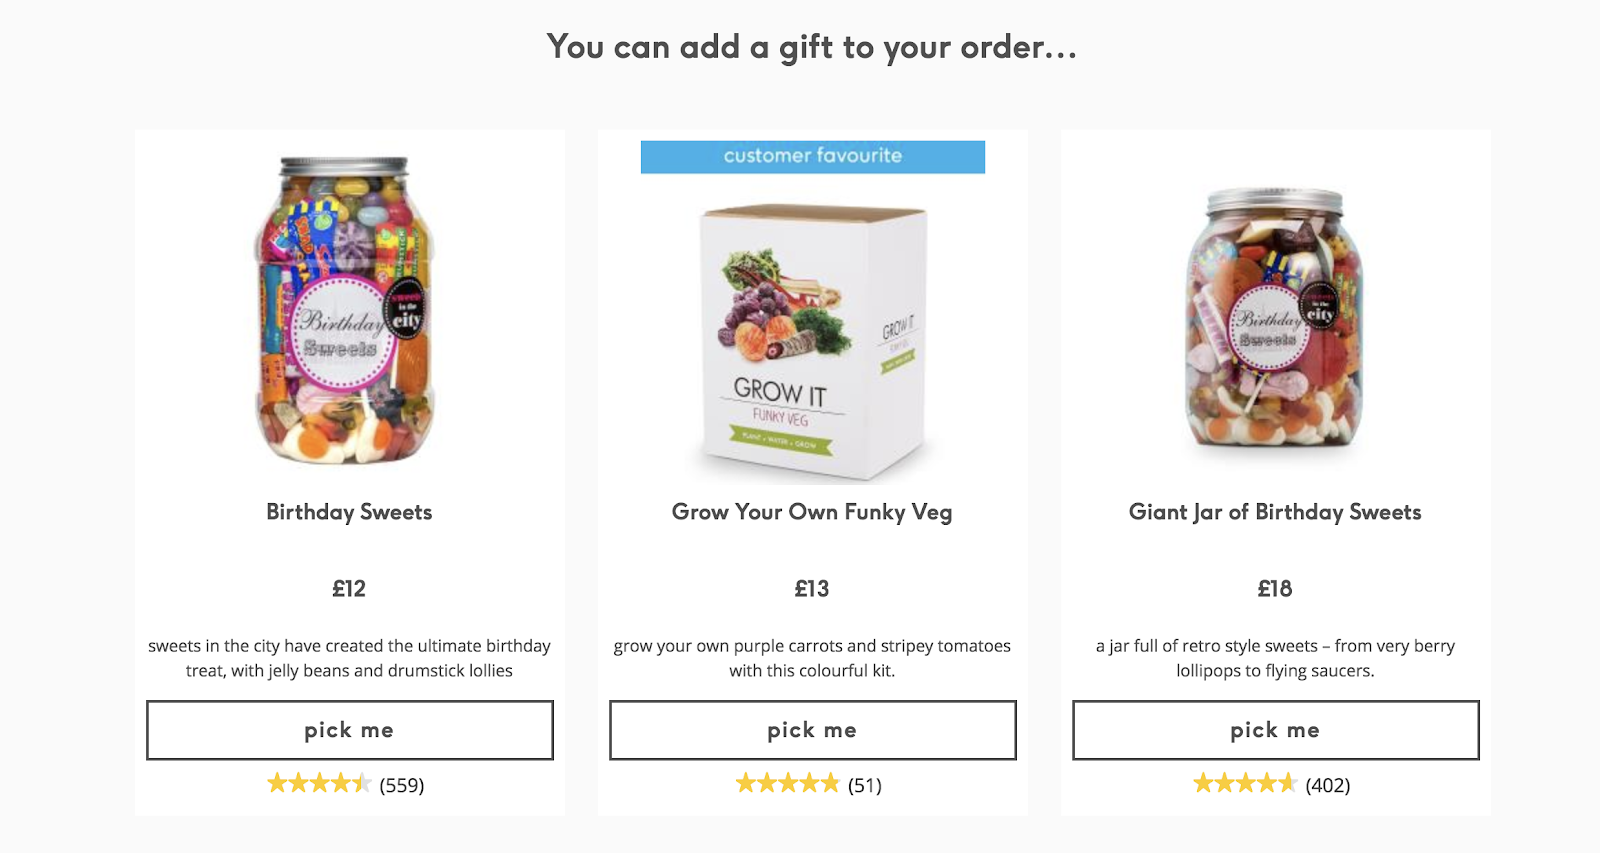 Screenshot showing a gift offer